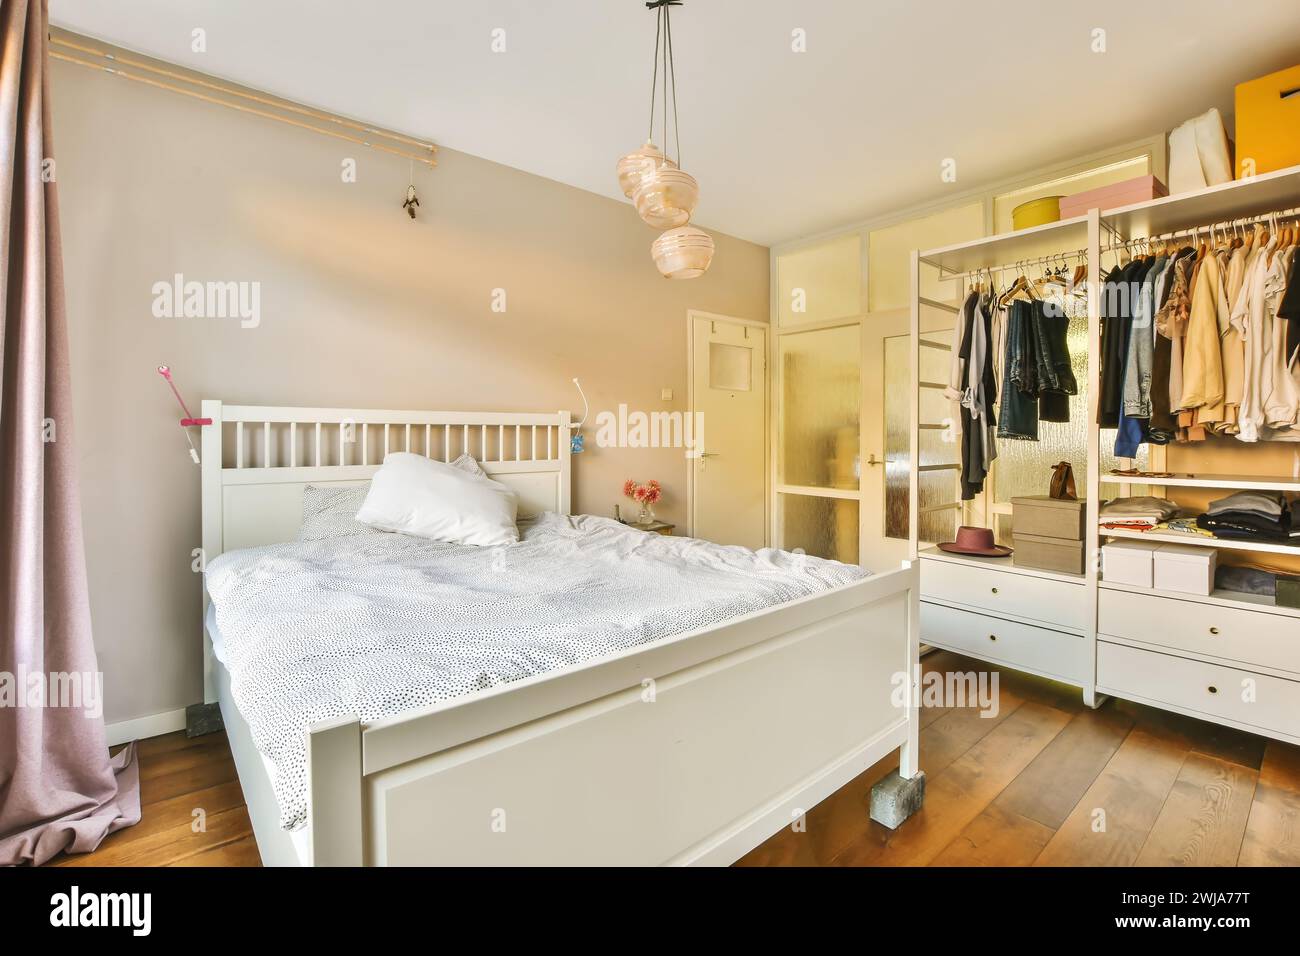 Ein komfortables und warm beleuchtetes Schlafzimmer mit weißem Bett, offenem Kleiderschrank mit Kleidung und bezaubernden Pendelleuchten Stockfoto